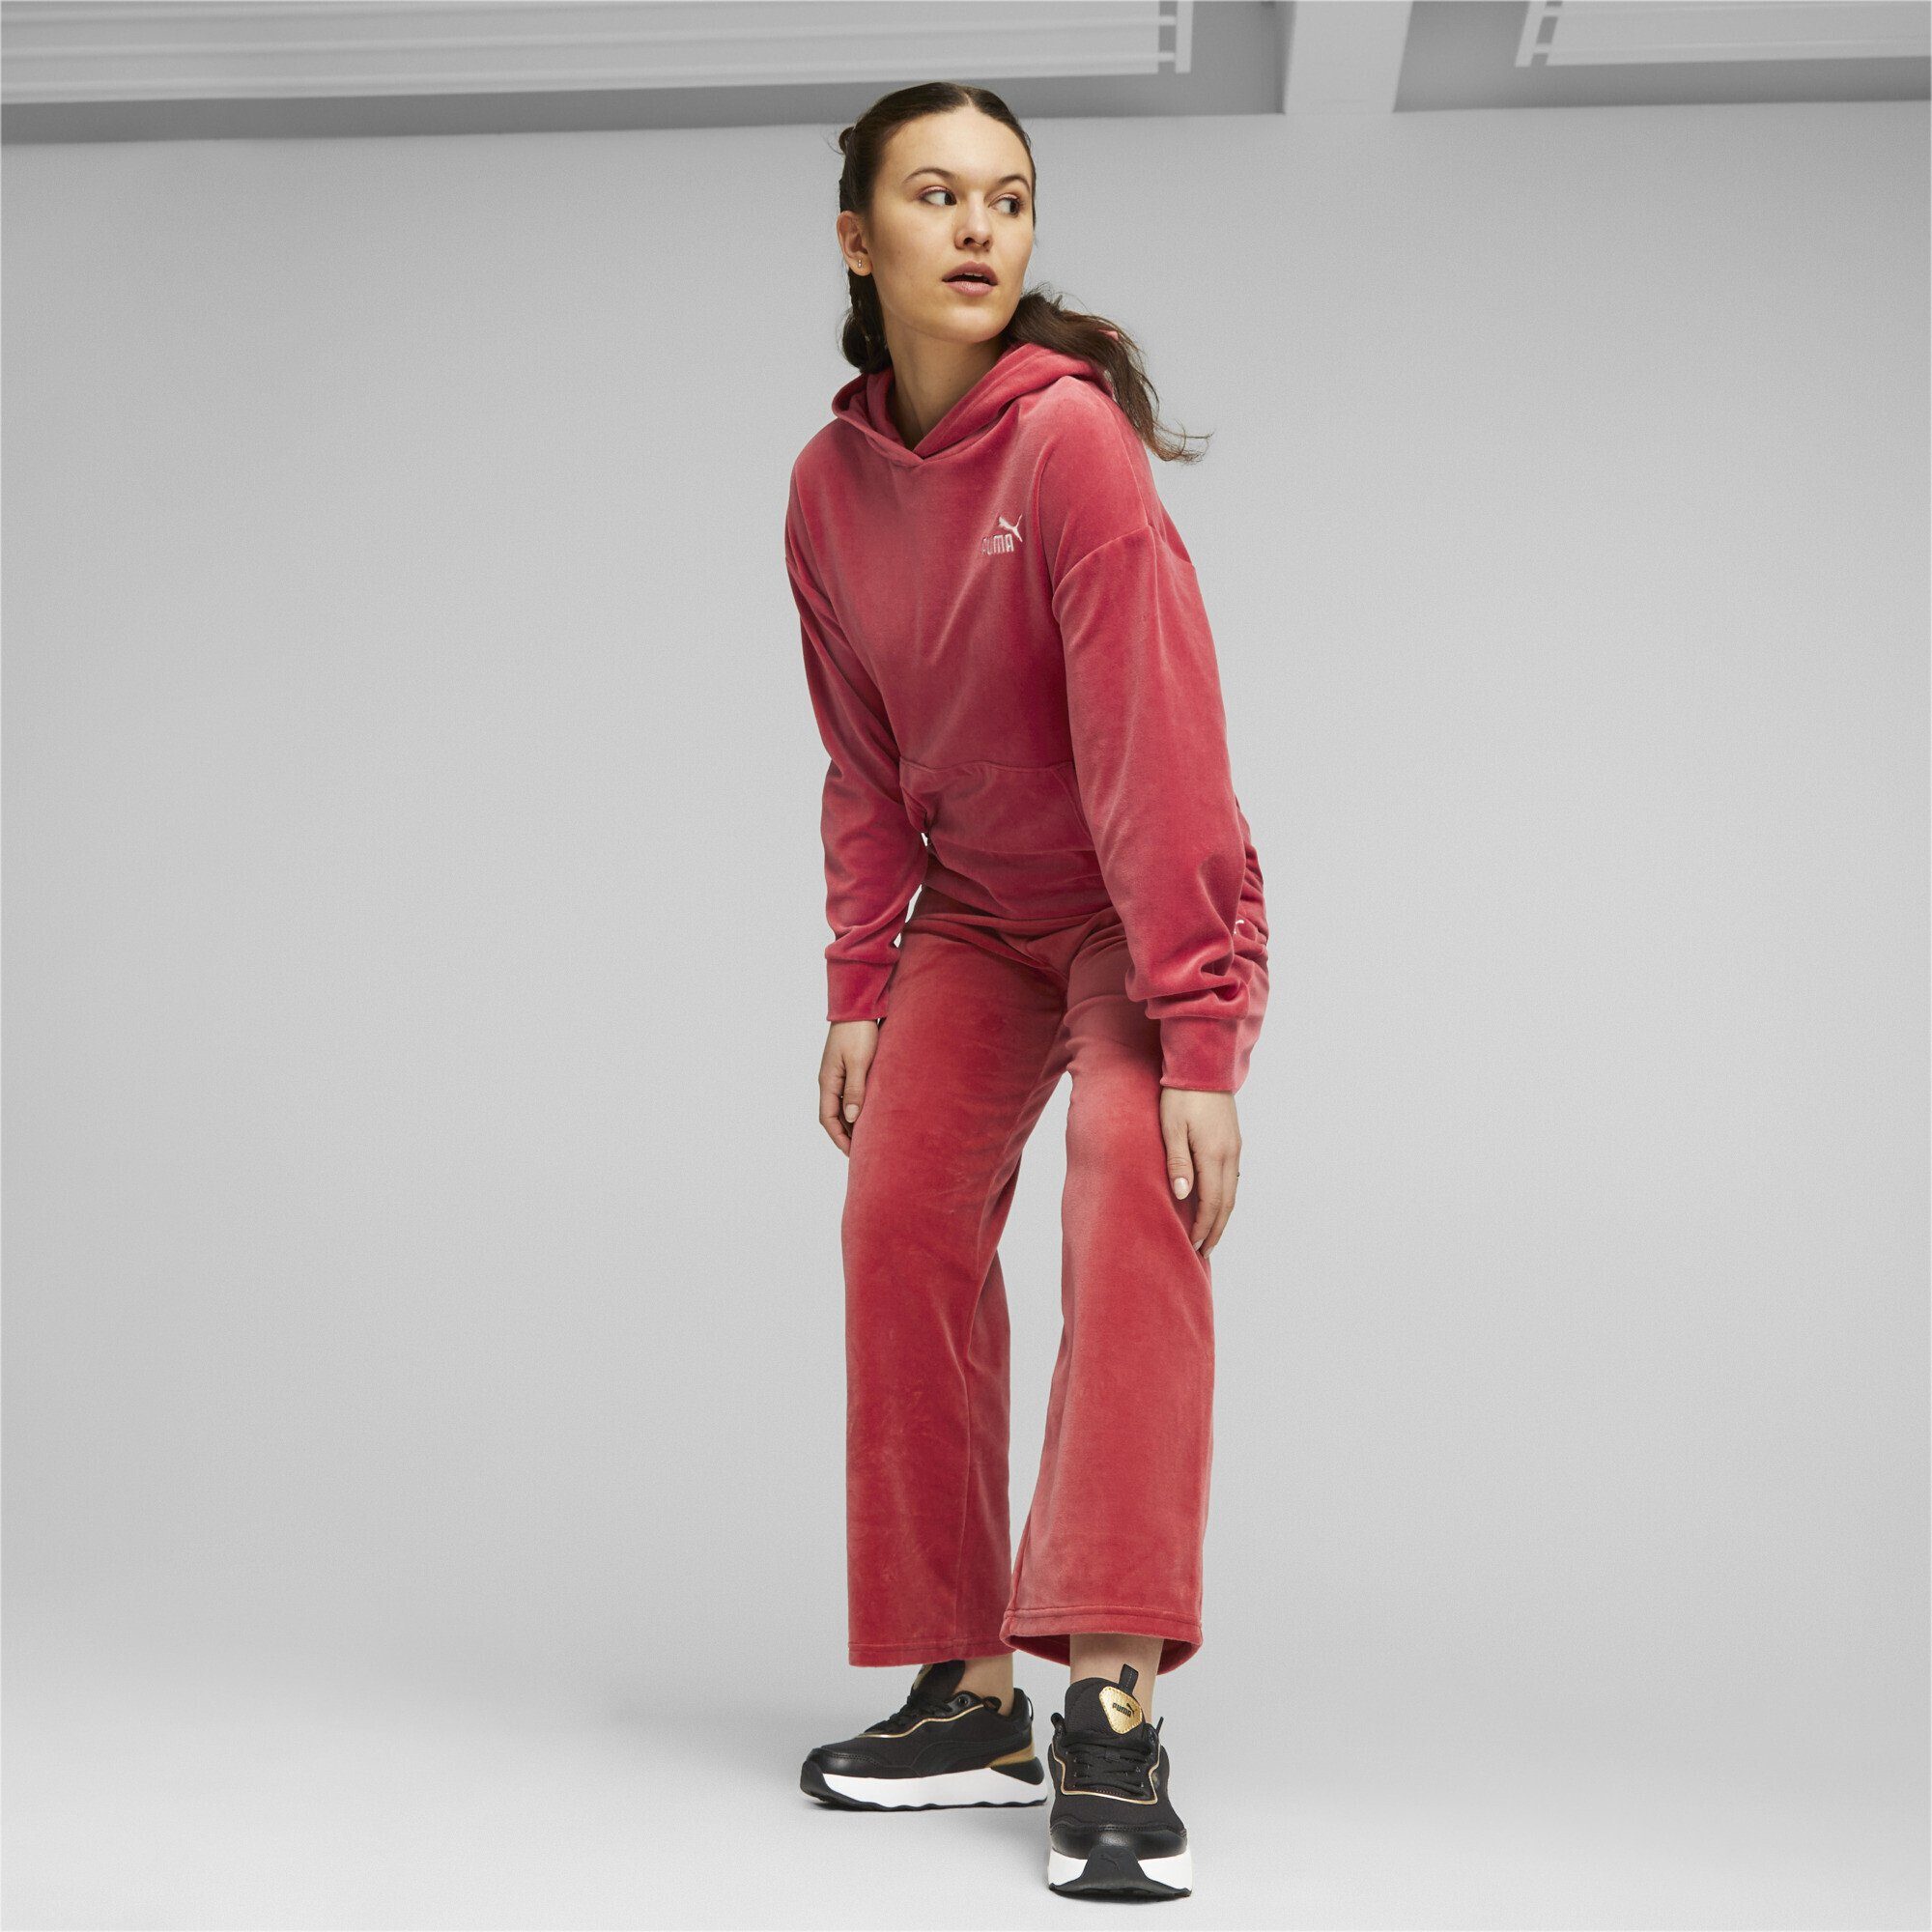 PUMA Leg-Hose Sporthose Red ESS+ Straight Astro Damen